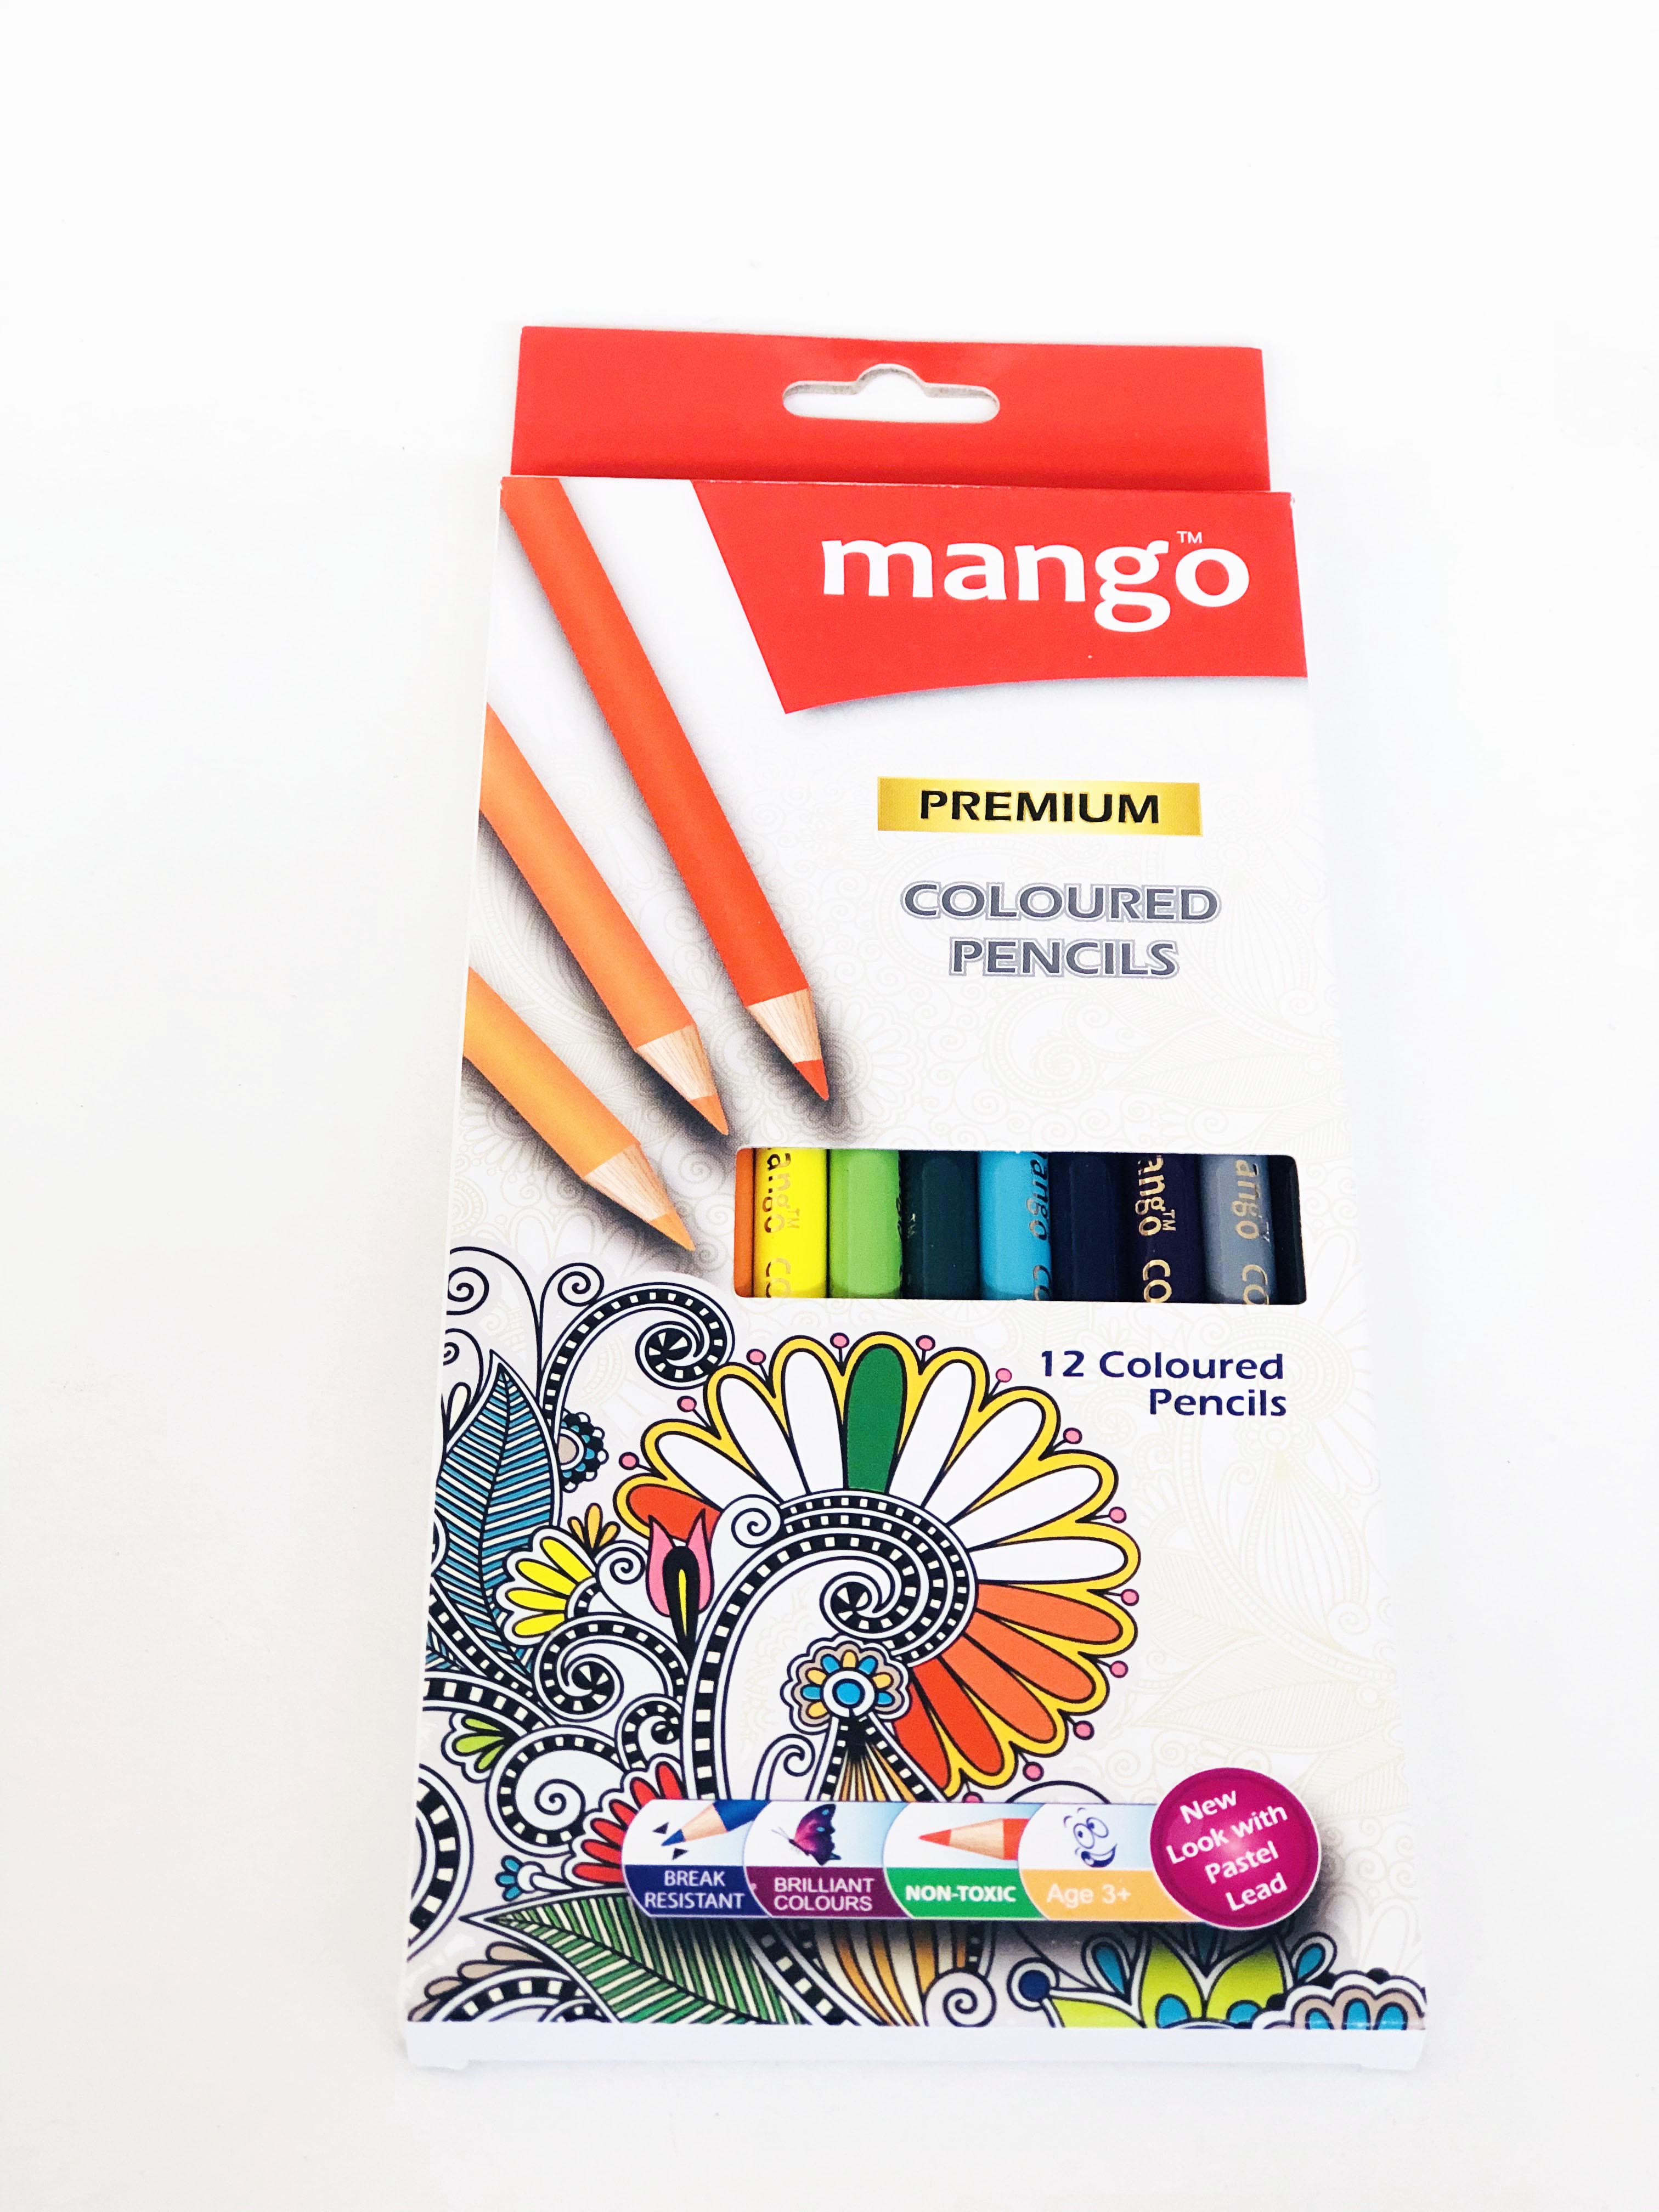 Mango Premium 12 Coloured Pencils